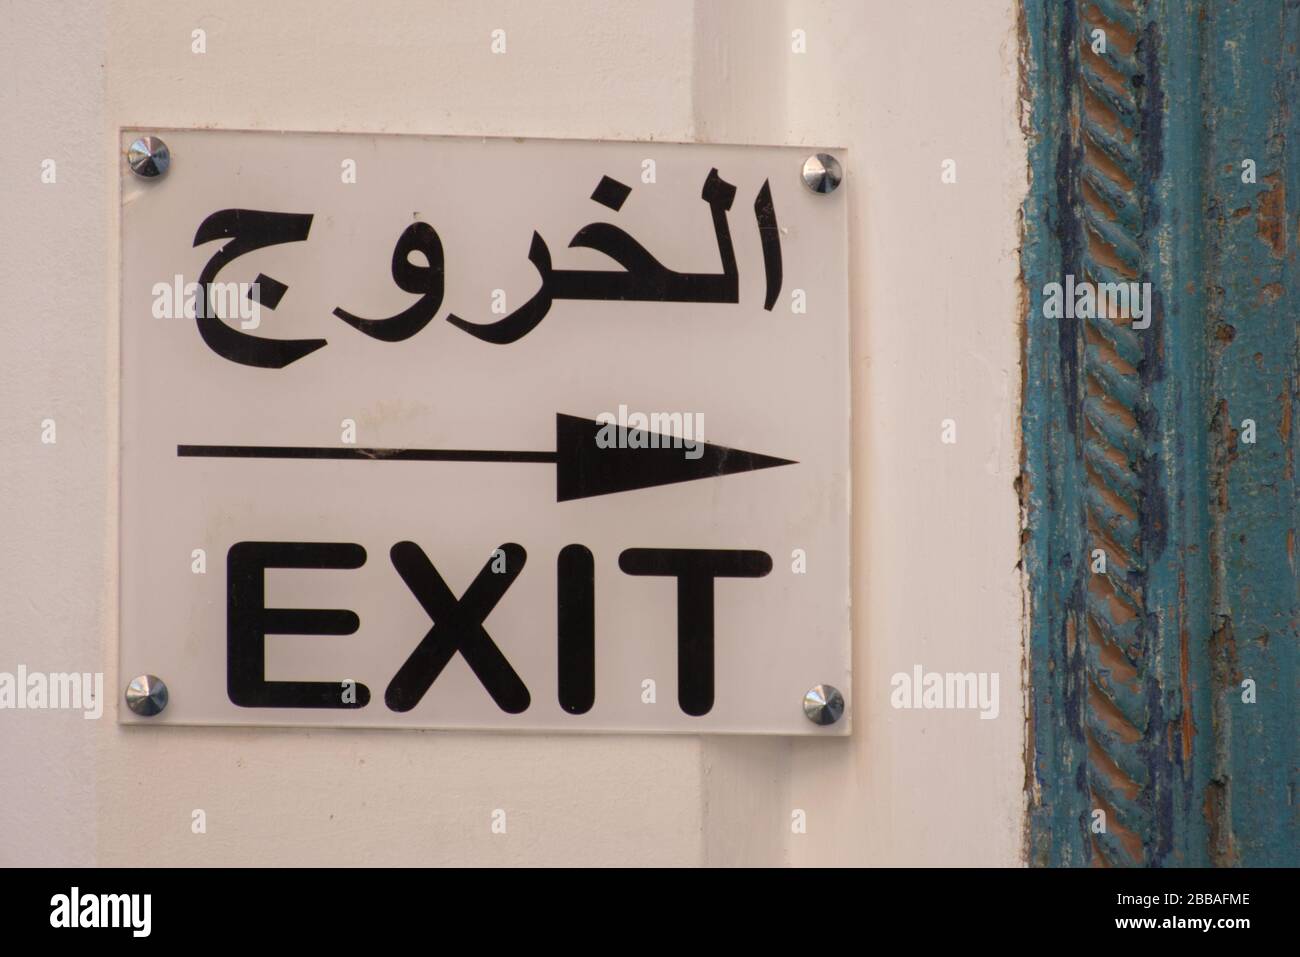 Un segno direzionale in lingua araba e inglese. Il testo tradotto della parte araba in inglese è -EXIT-. Foto Stock